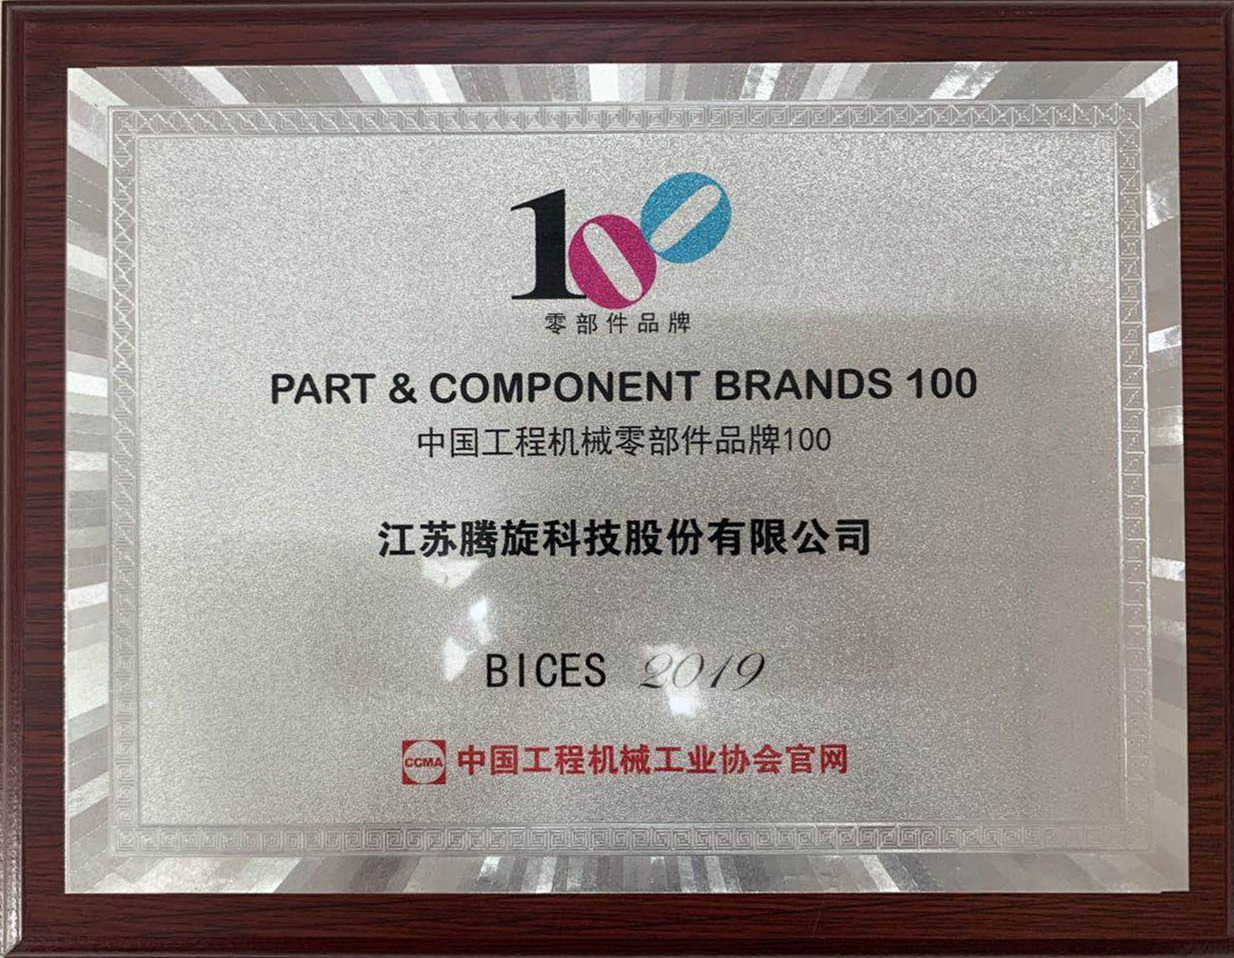 中國工程機械零部件品牌100